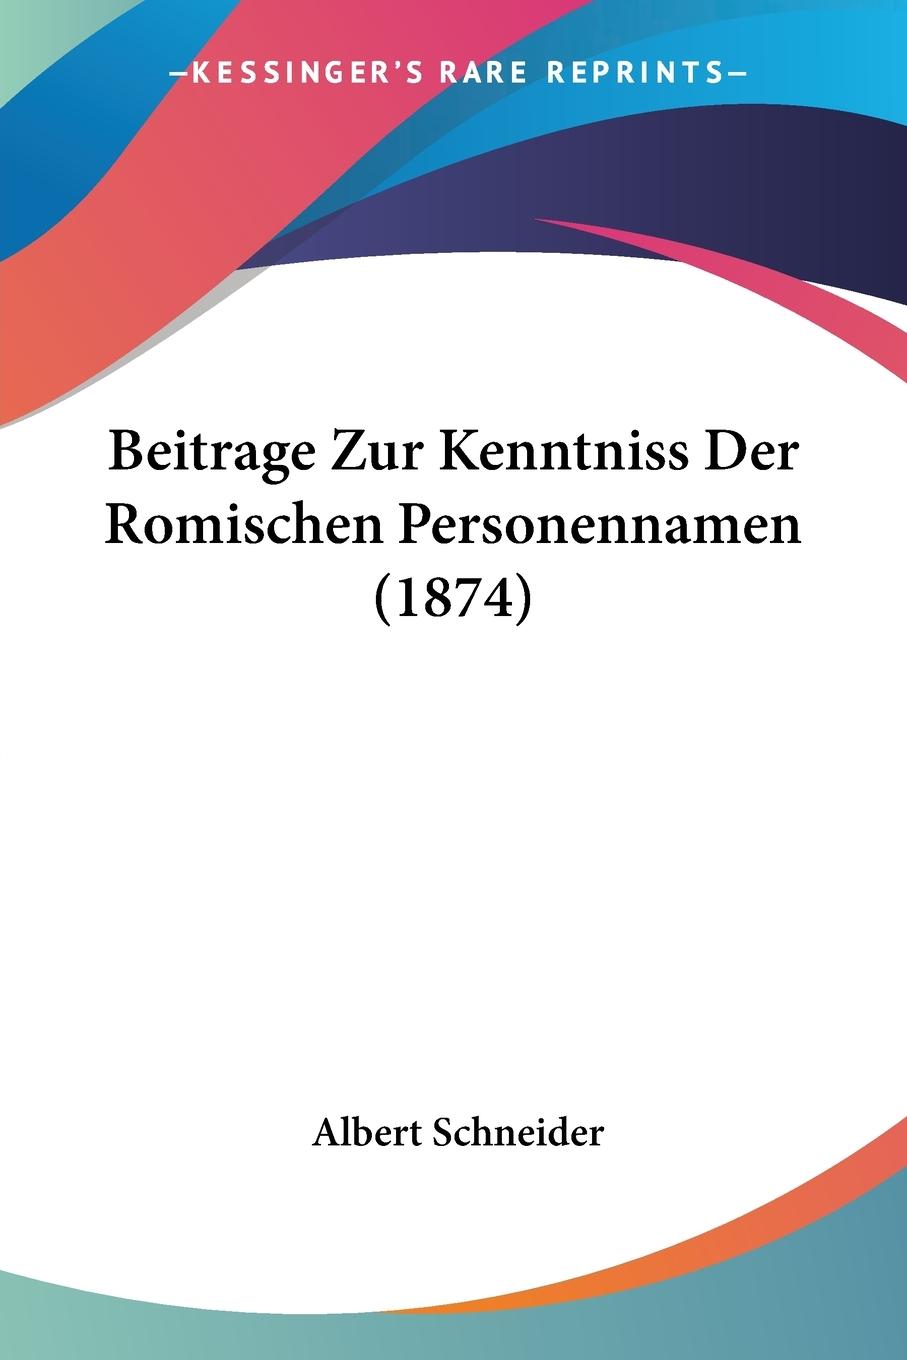 Beitrage Zur Kenntniss Der Romischen Personennamen (1874) / Albert Schneider / Taschenbuch / Paperback / Deutsch / 2010 / Kessinger Publishing, LLC / EAN 9781160318839 - Schneider, Albert